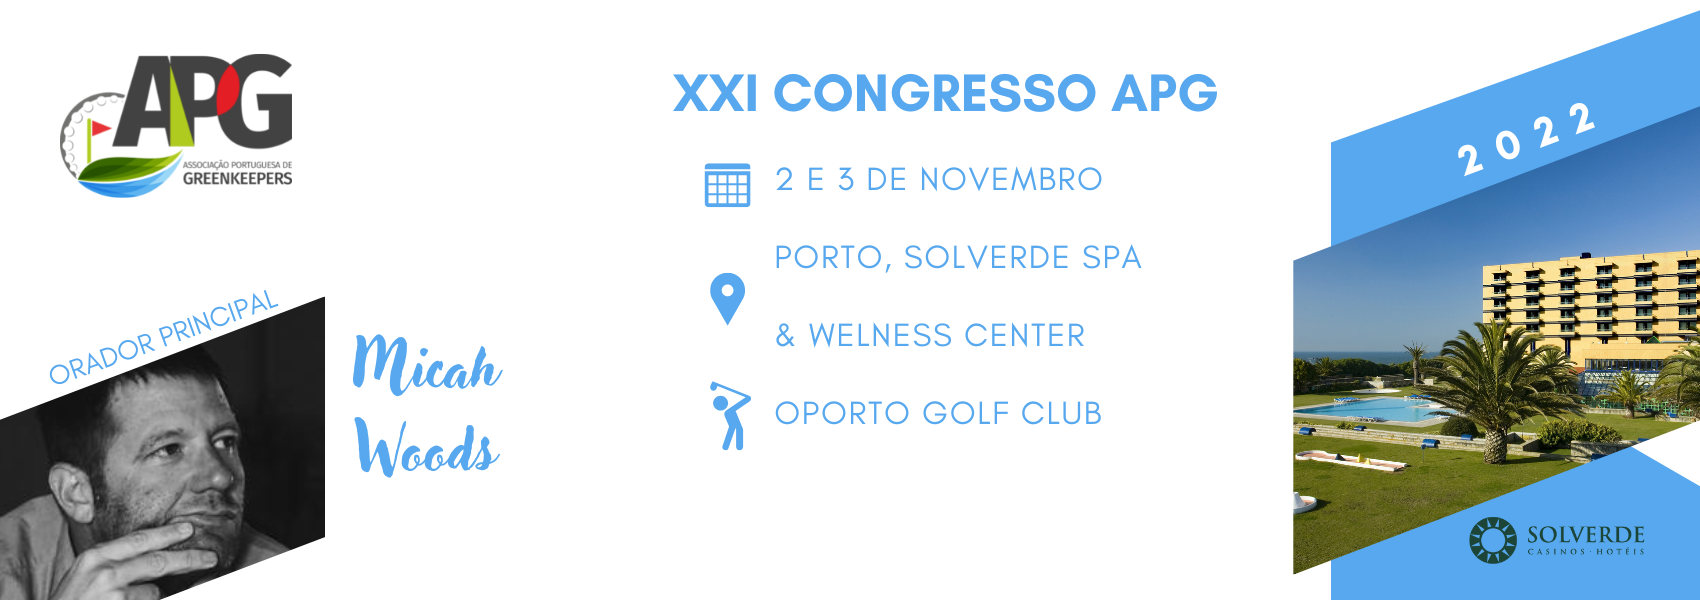 XXI Congresso APG - Inscreva-se AQUI 